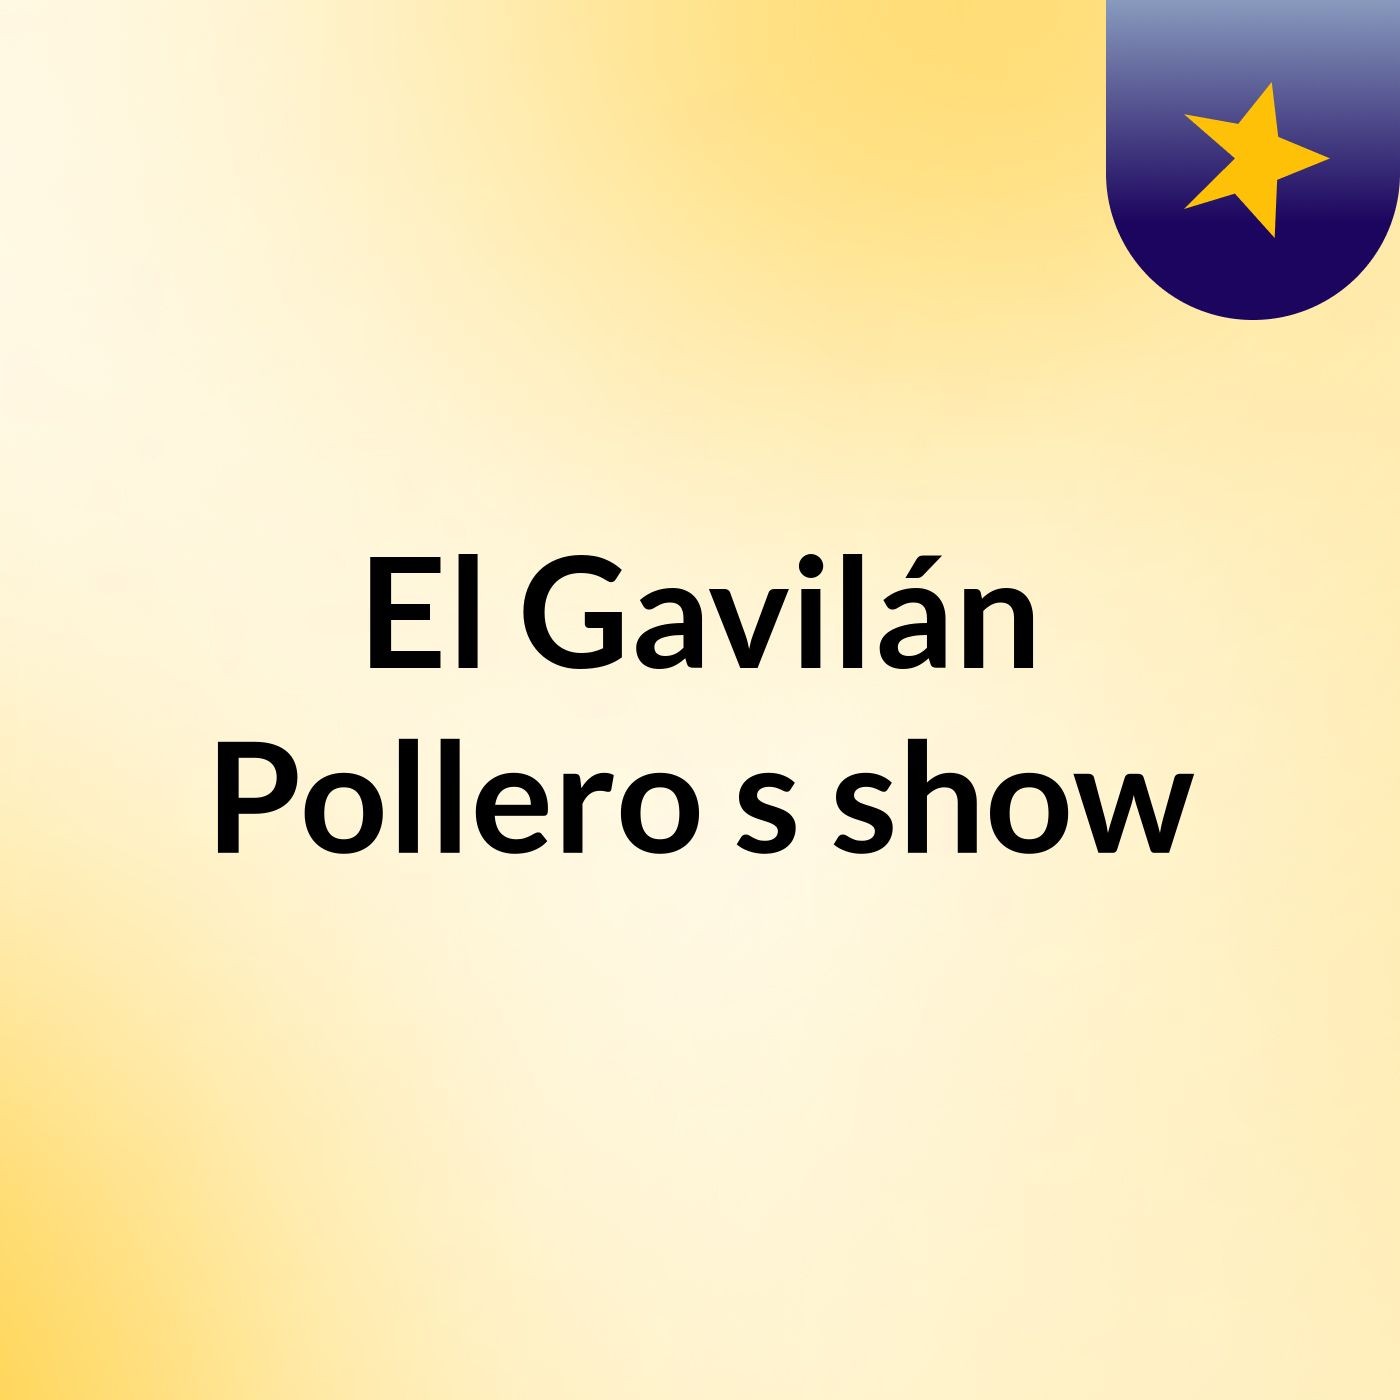 El Gavilán Pollero's show